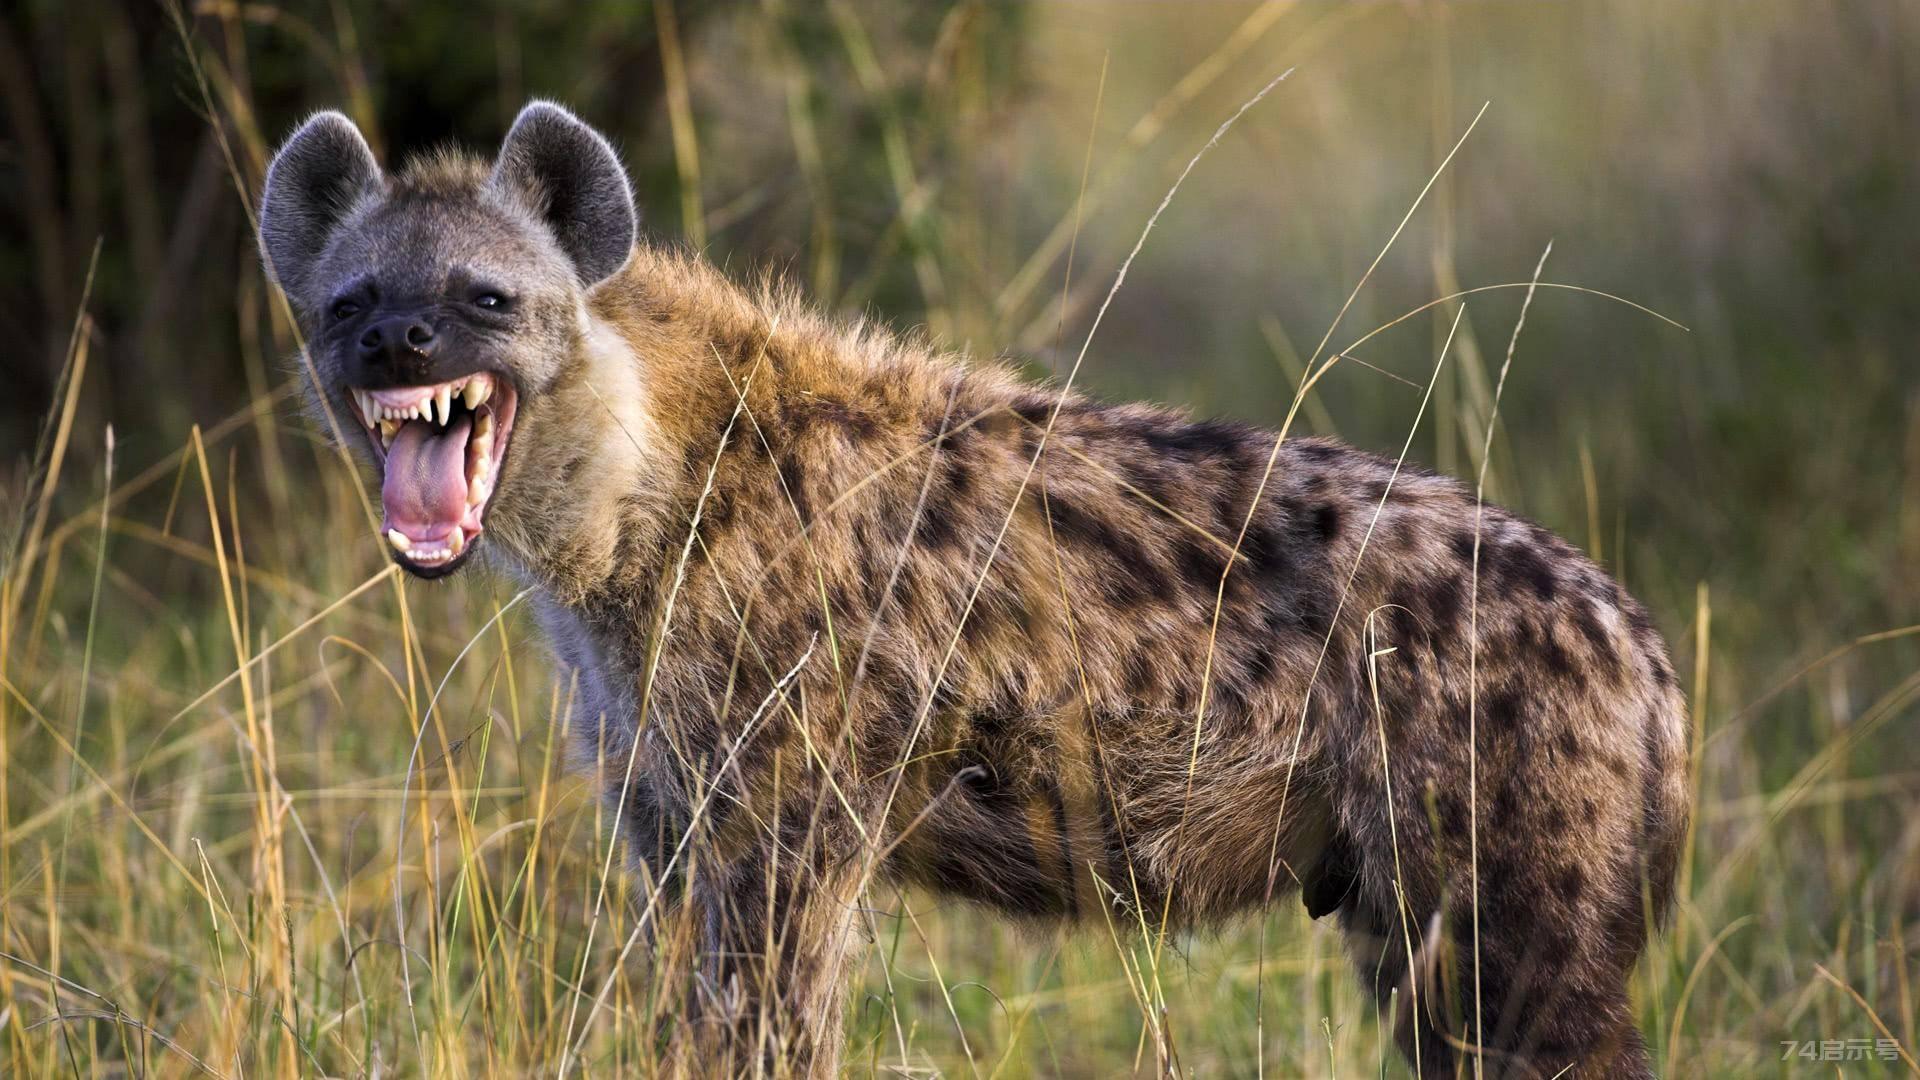 斑鬣狗狩猎到底有多聪明？ 能单独狩猎吗？整个狩猎过程都是计谋